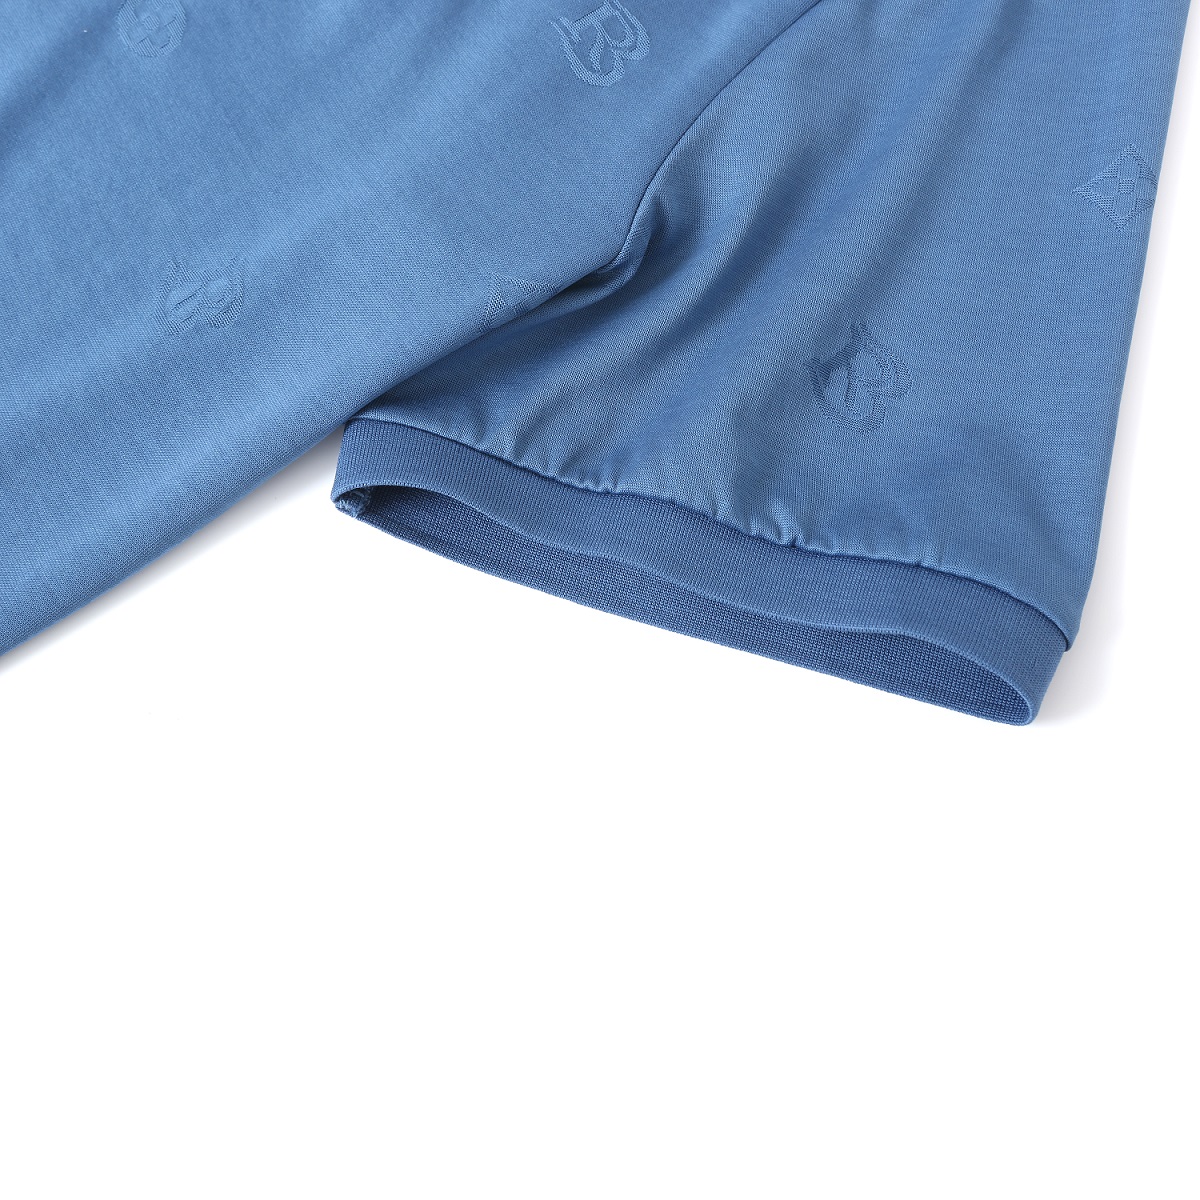 Wholesale latest design Apparel Factory Men’s Plain golf polo shirt t shirt